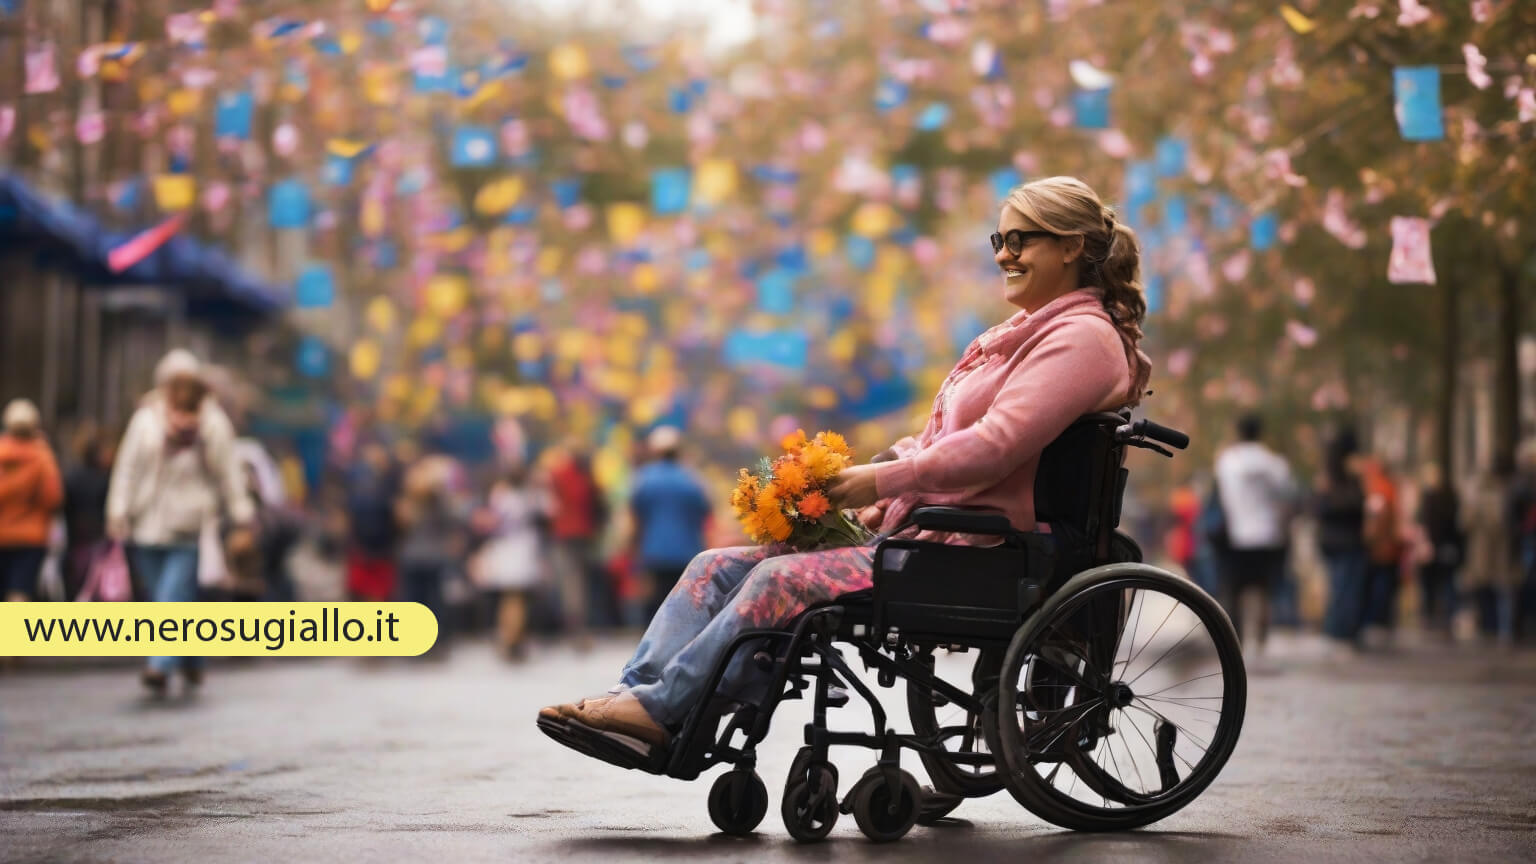 You are currently viewing Giornata Internazionale per le Persone con Disabilità